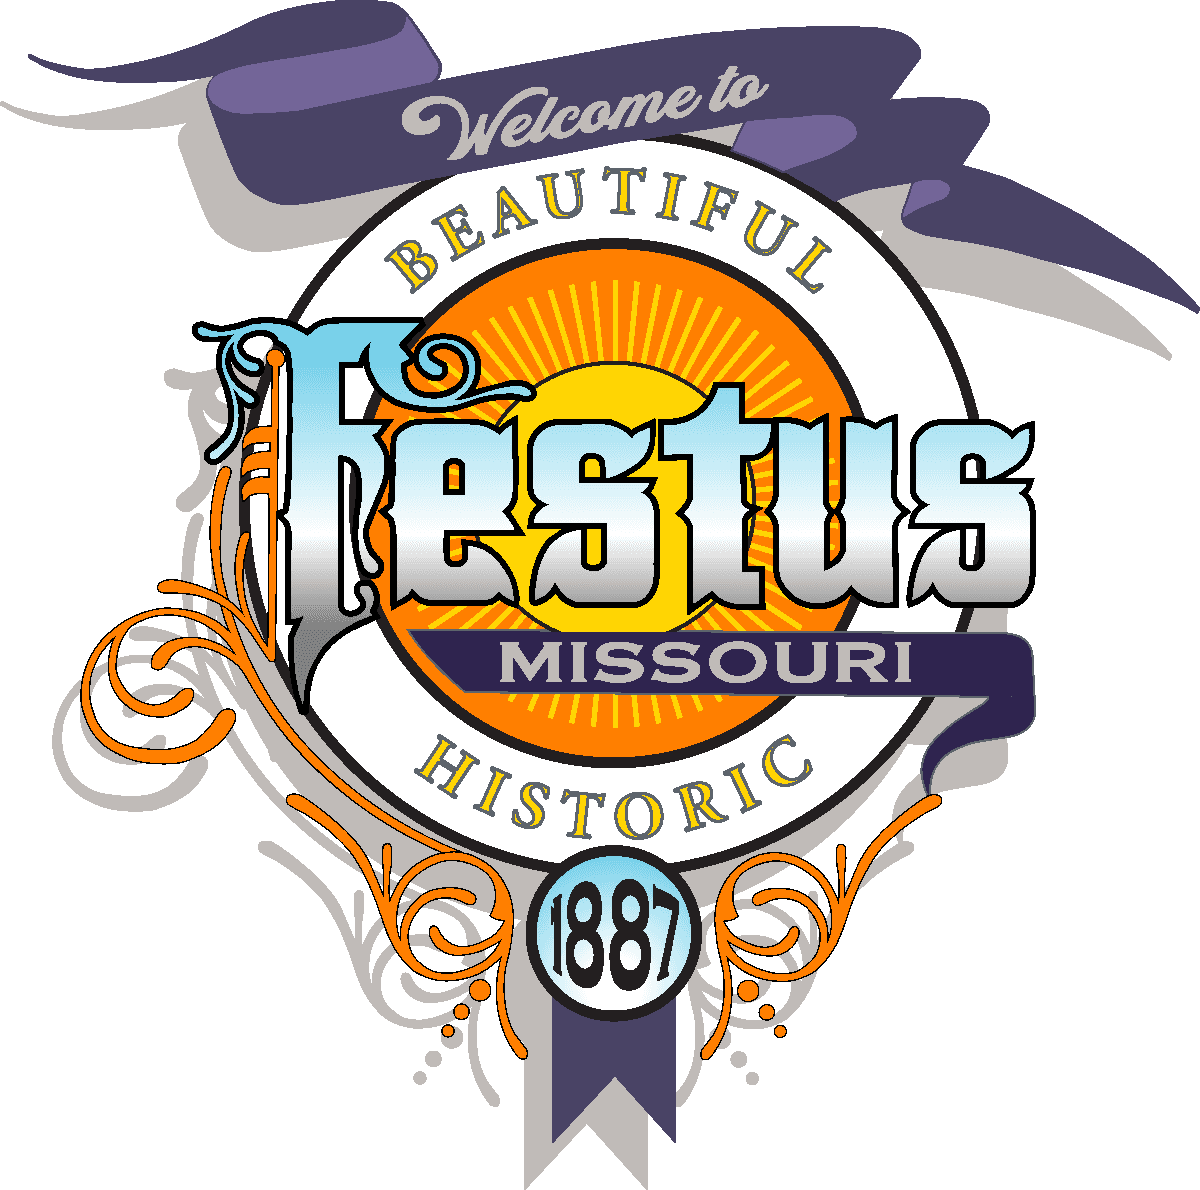 City of Festus